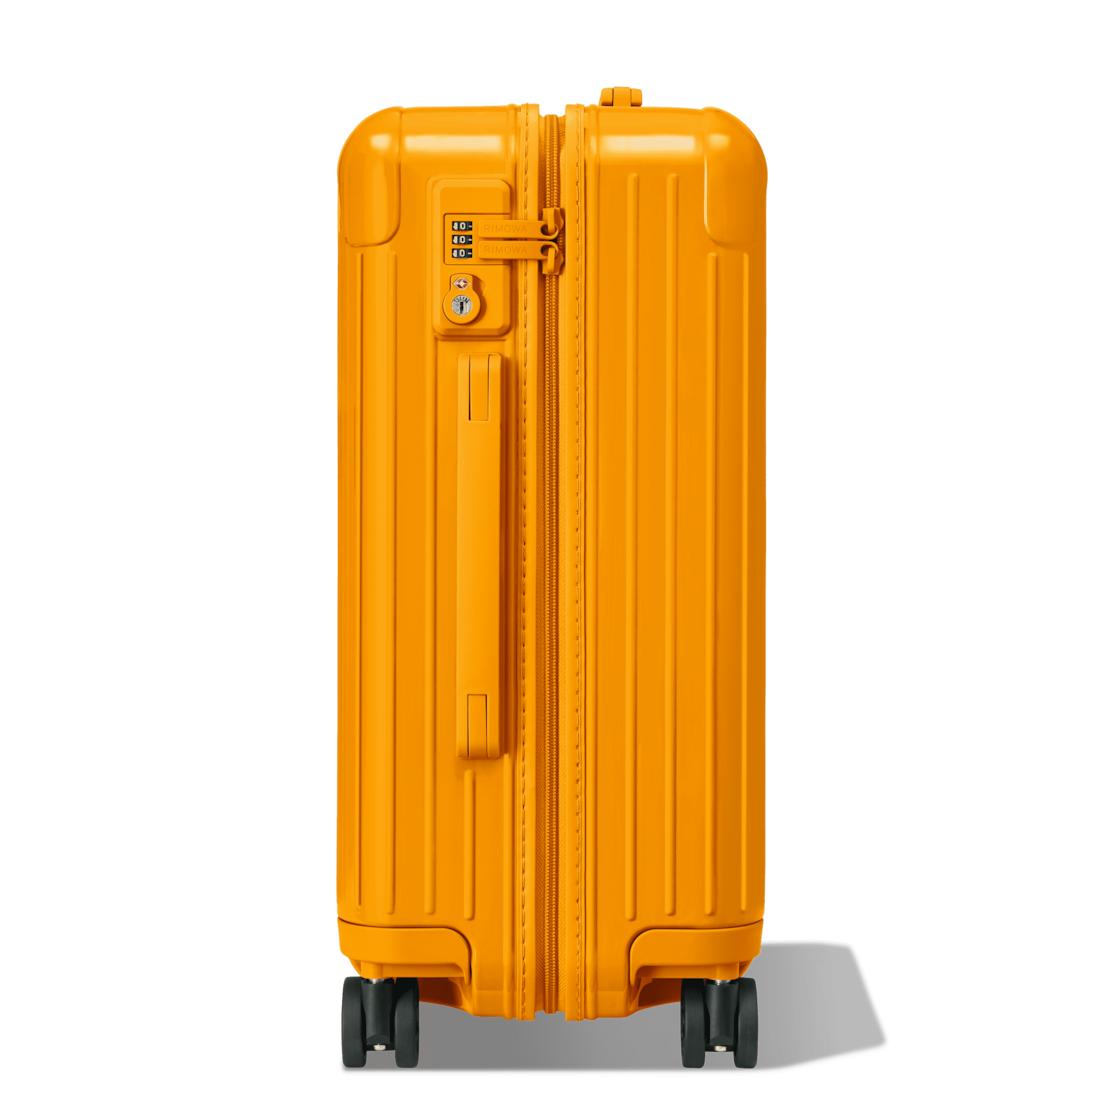 RIMOWA Essential Cabin Suitcase in Orange for Men